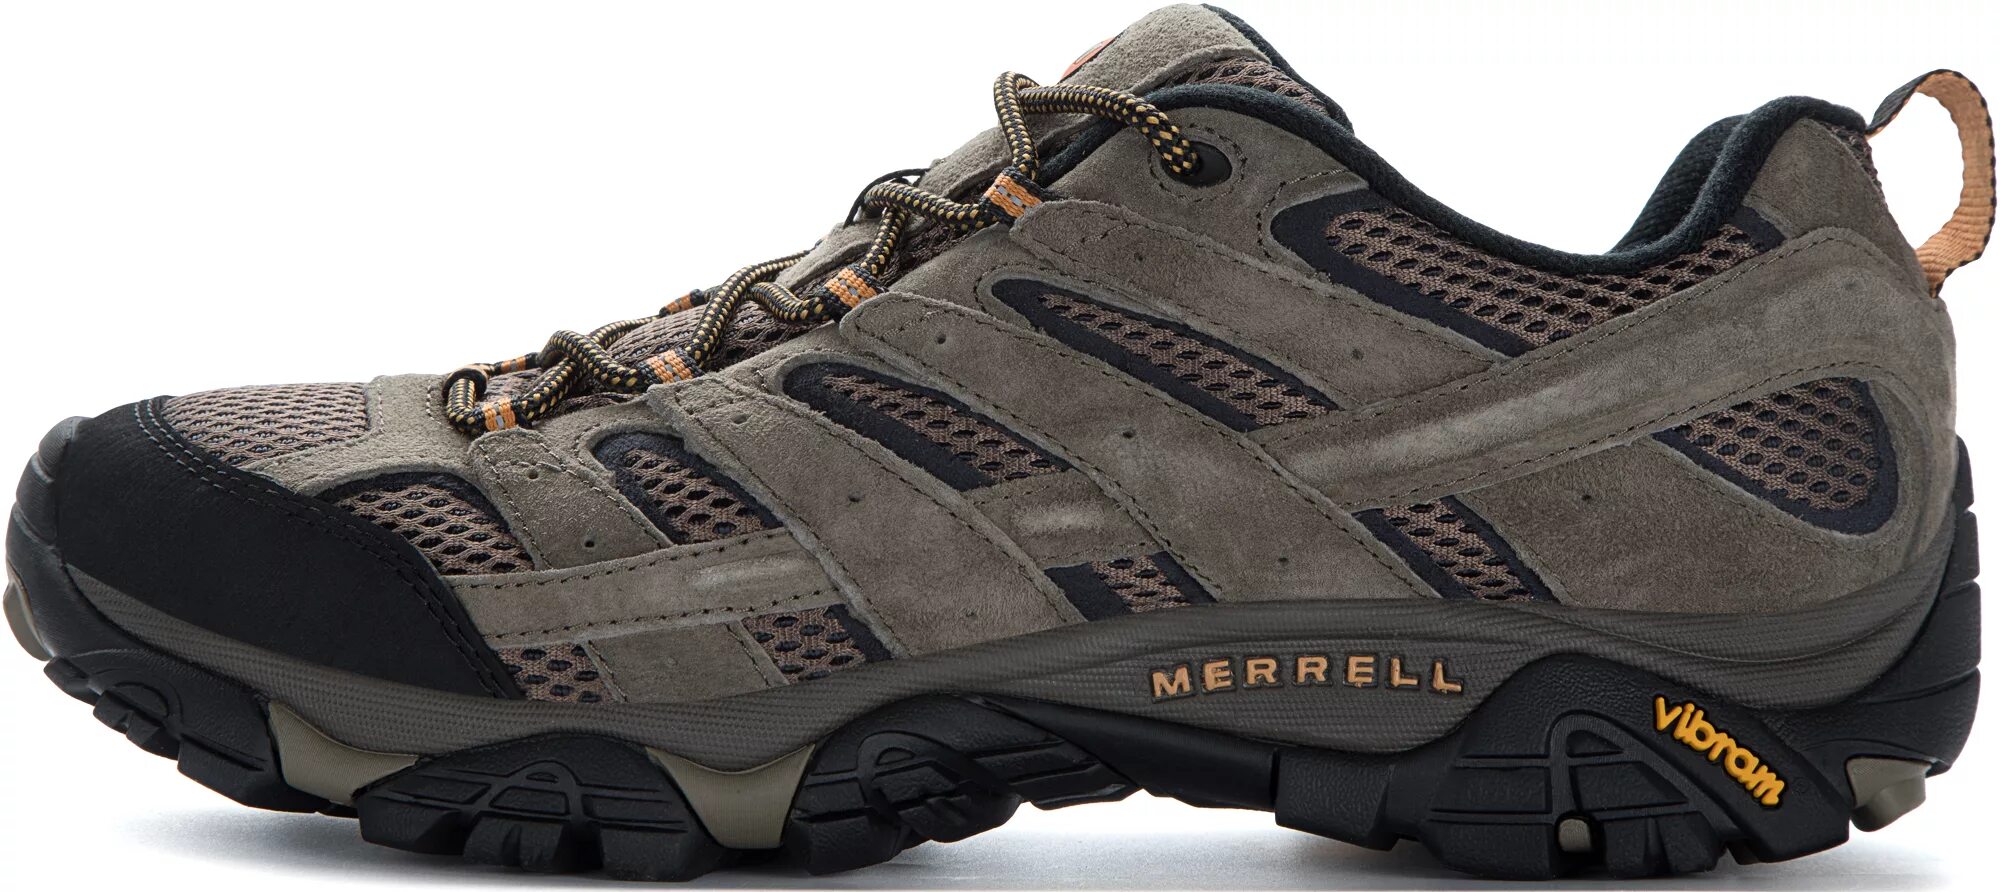 Мерелл обувь купить. Merrell Moab 2. Merrell кроссовки мужские Moab 2. Полуботинки мужские Merrell Moab 2 Vent. Кроссовки меррел треккинговые.